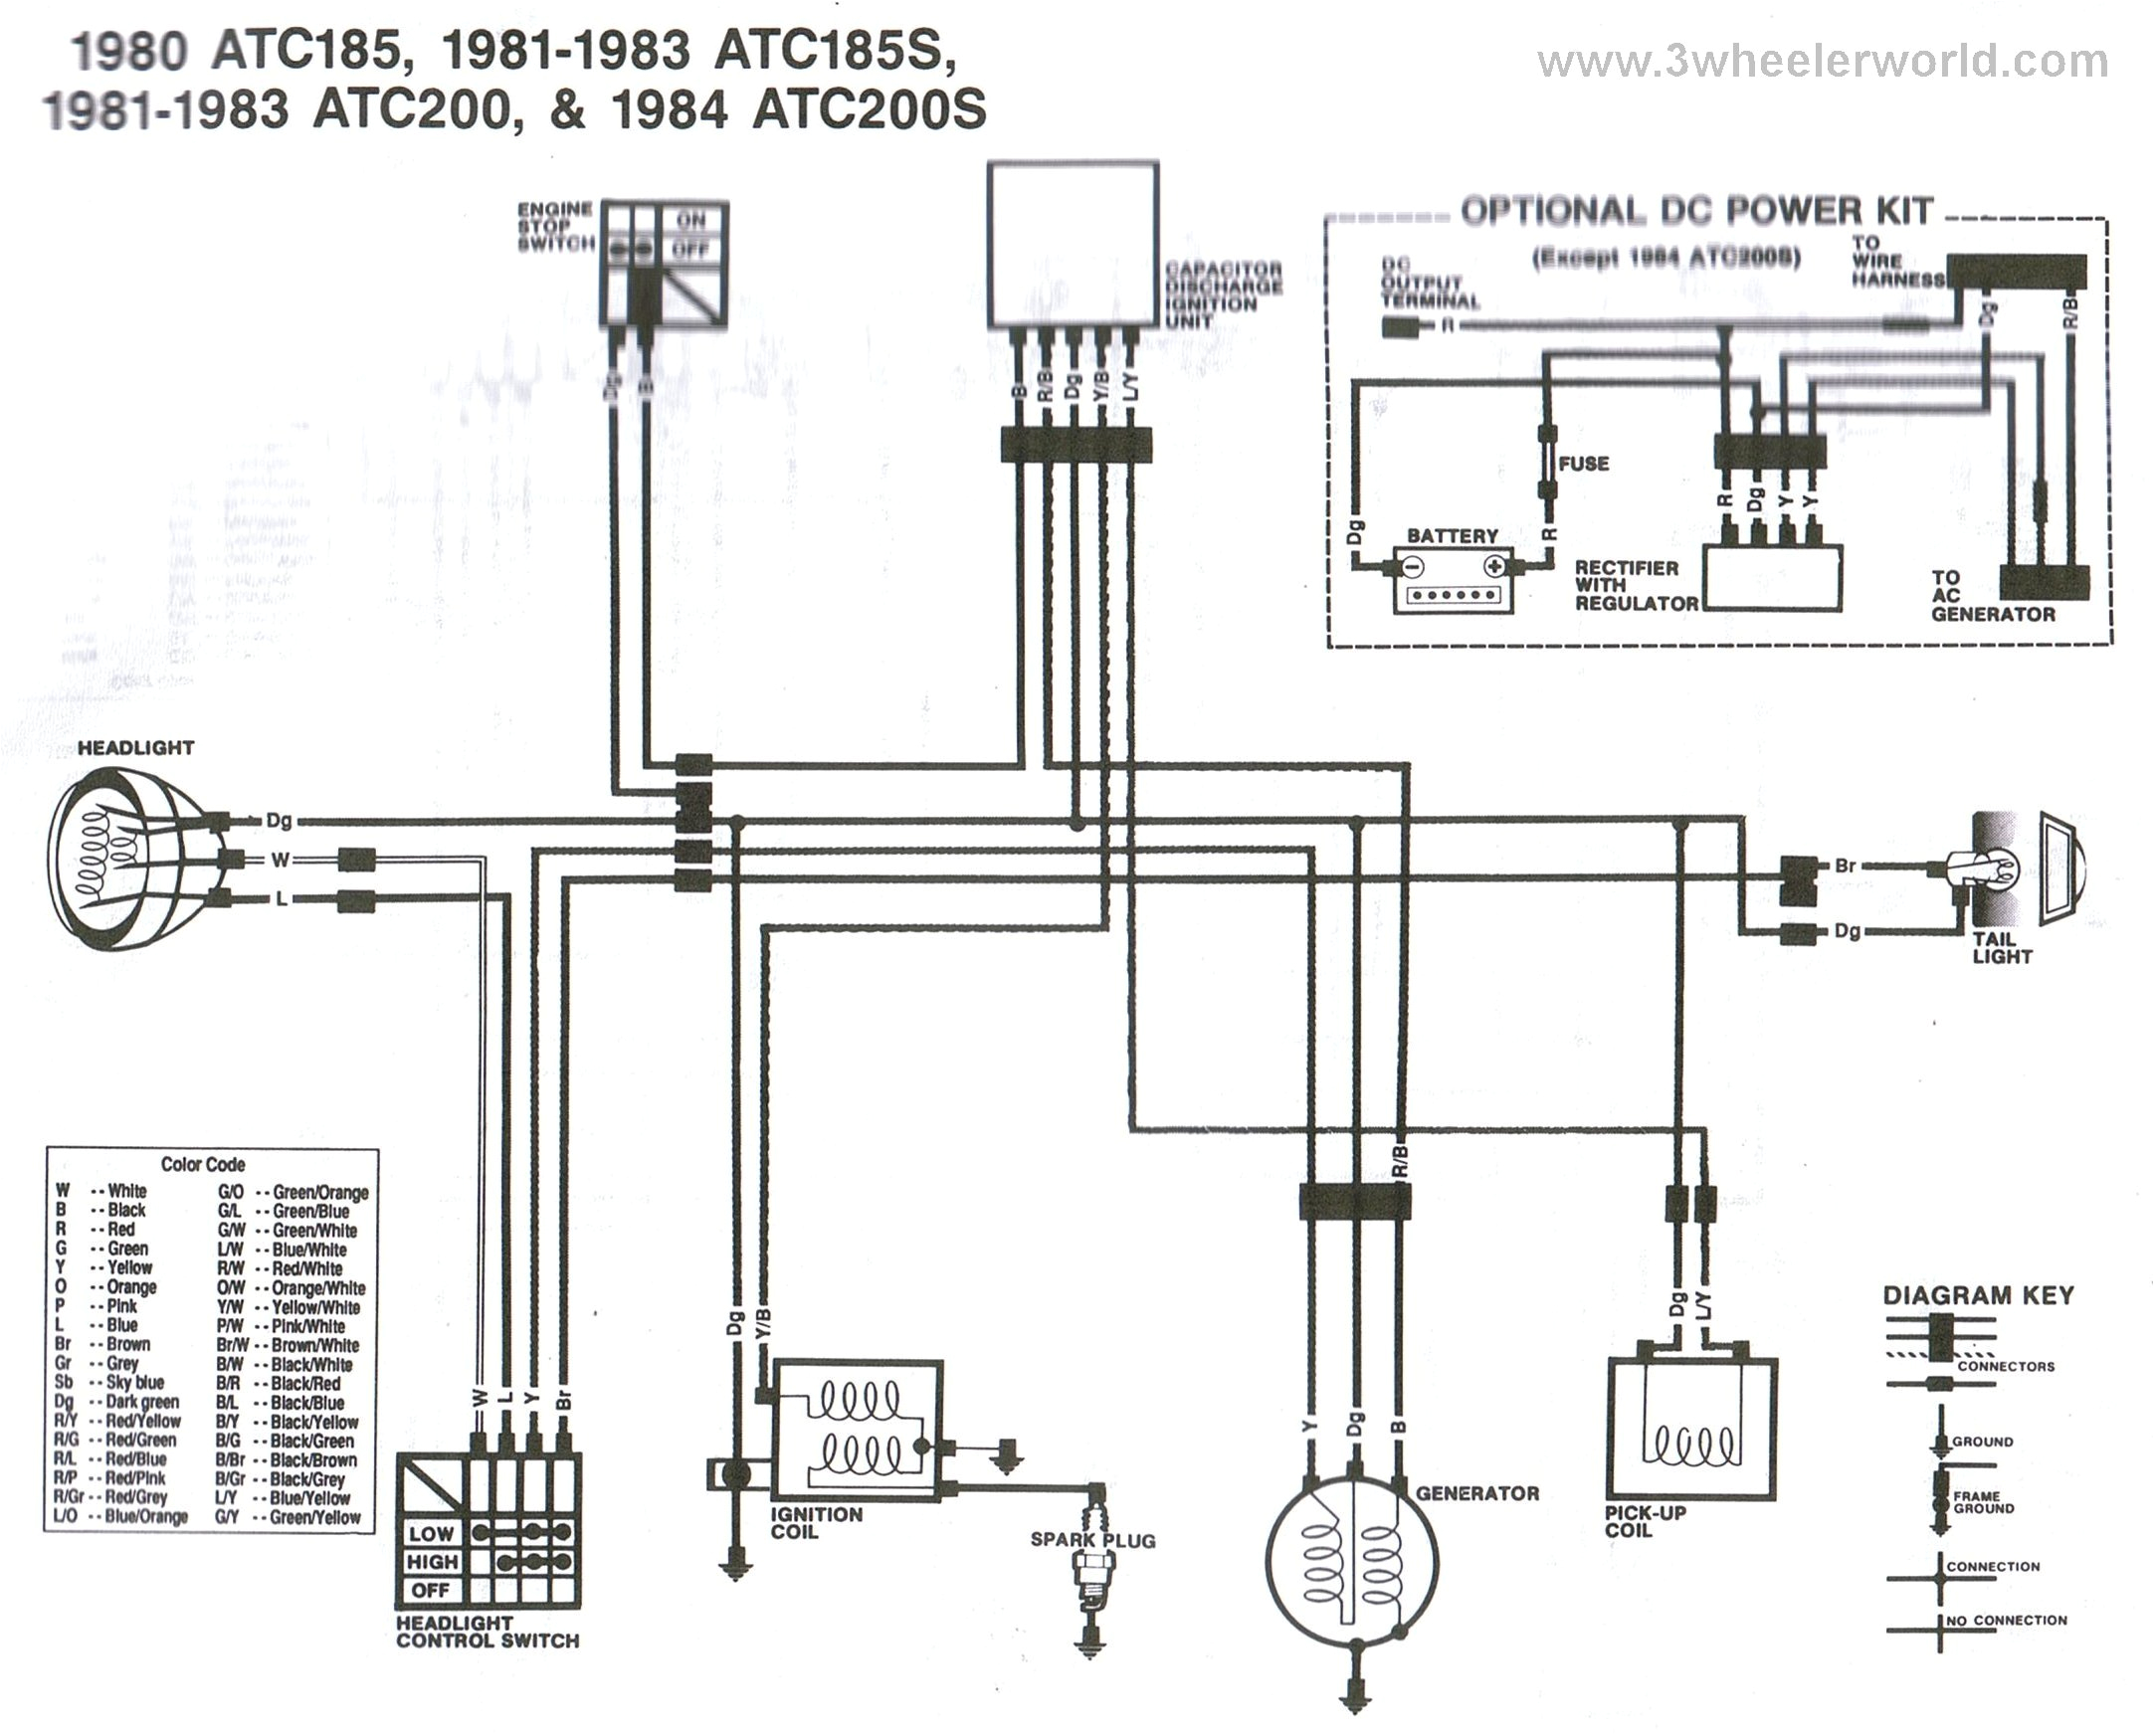 atc 125 wiring diagram option wiring diagram atc 125 wiring diagram wiring diagram honda atc 125